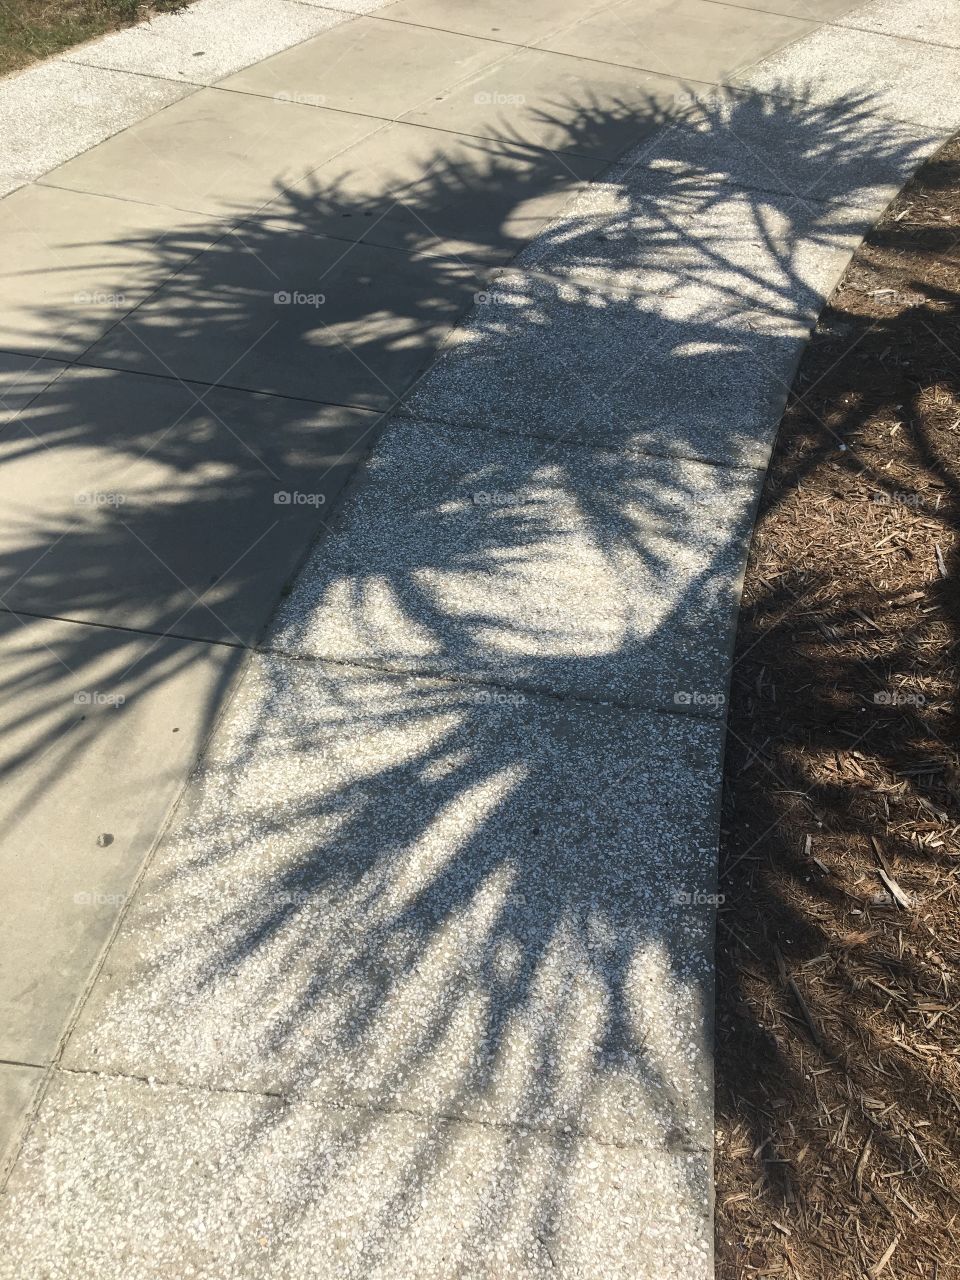 Shadow on the sidewalk. 